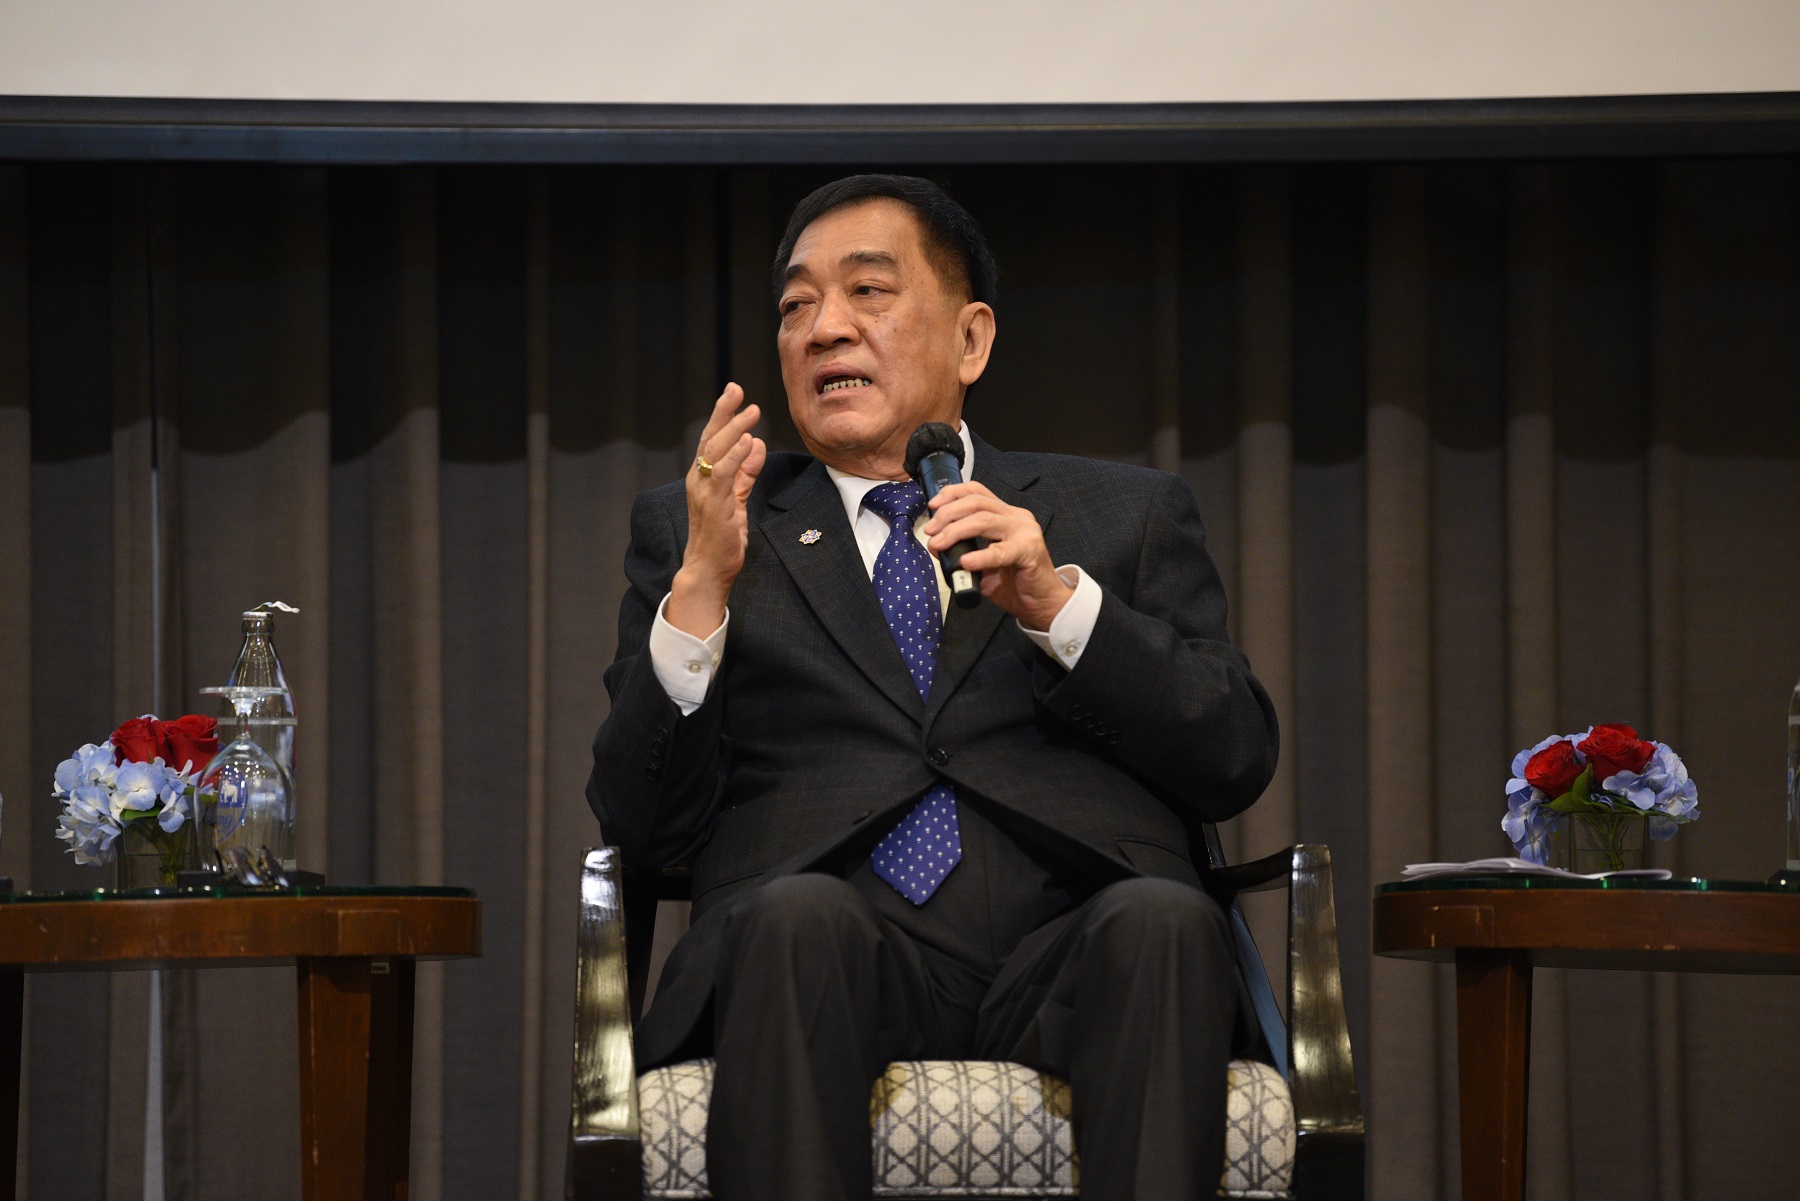 โอกาส ความก้าวหน้า และการเจรจาที่เกิดขึ้น ต่อการพัฒนาเศรษฐกิจไทย หลังการประชุม APEC CEO Summit 2022